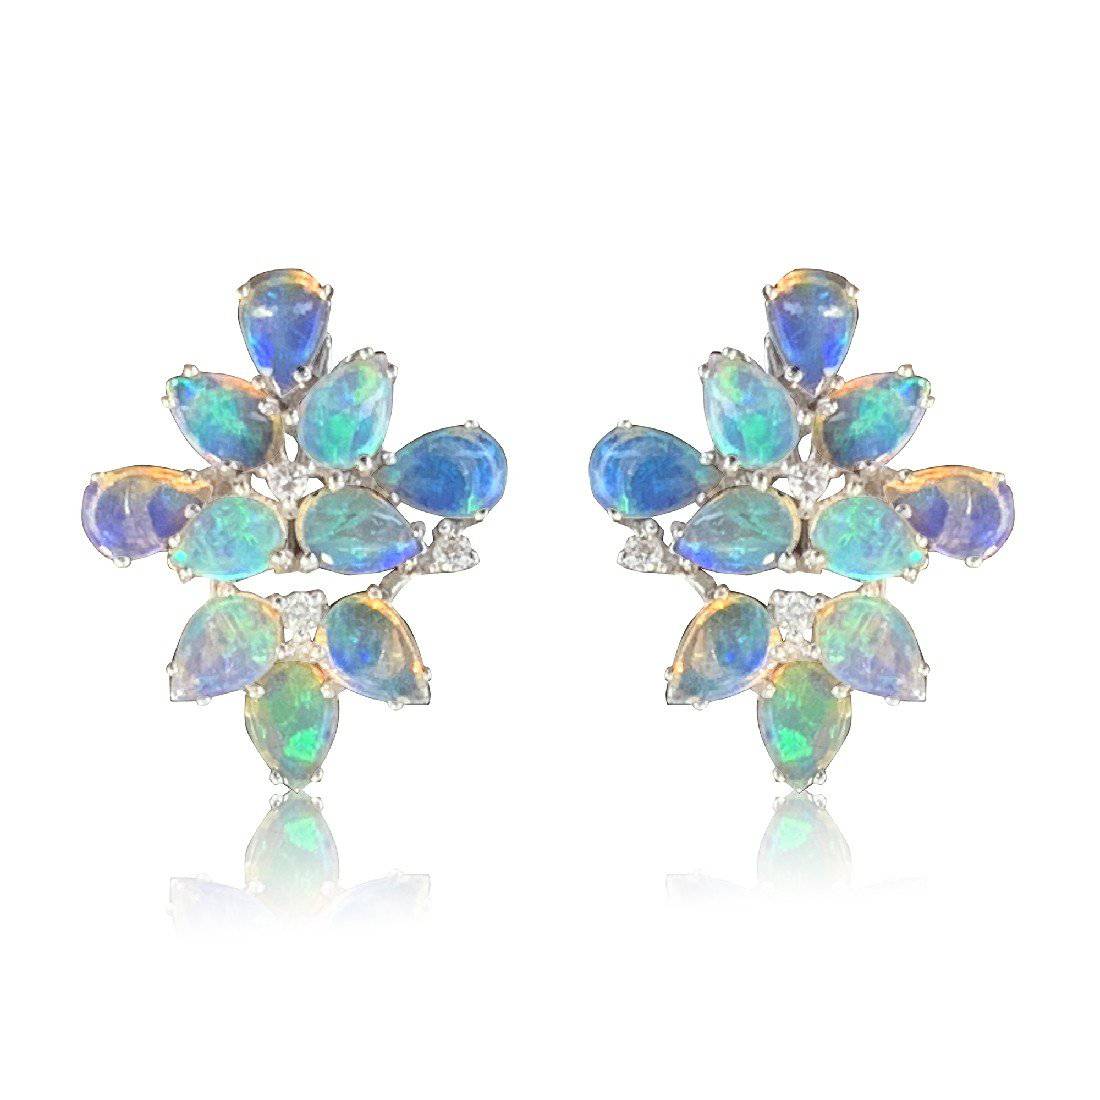 18kt White Gold Opal & Diamond Flower style earrings - Masterpiece Jewellery Opal & Gems Sydney Australia | Online Shop